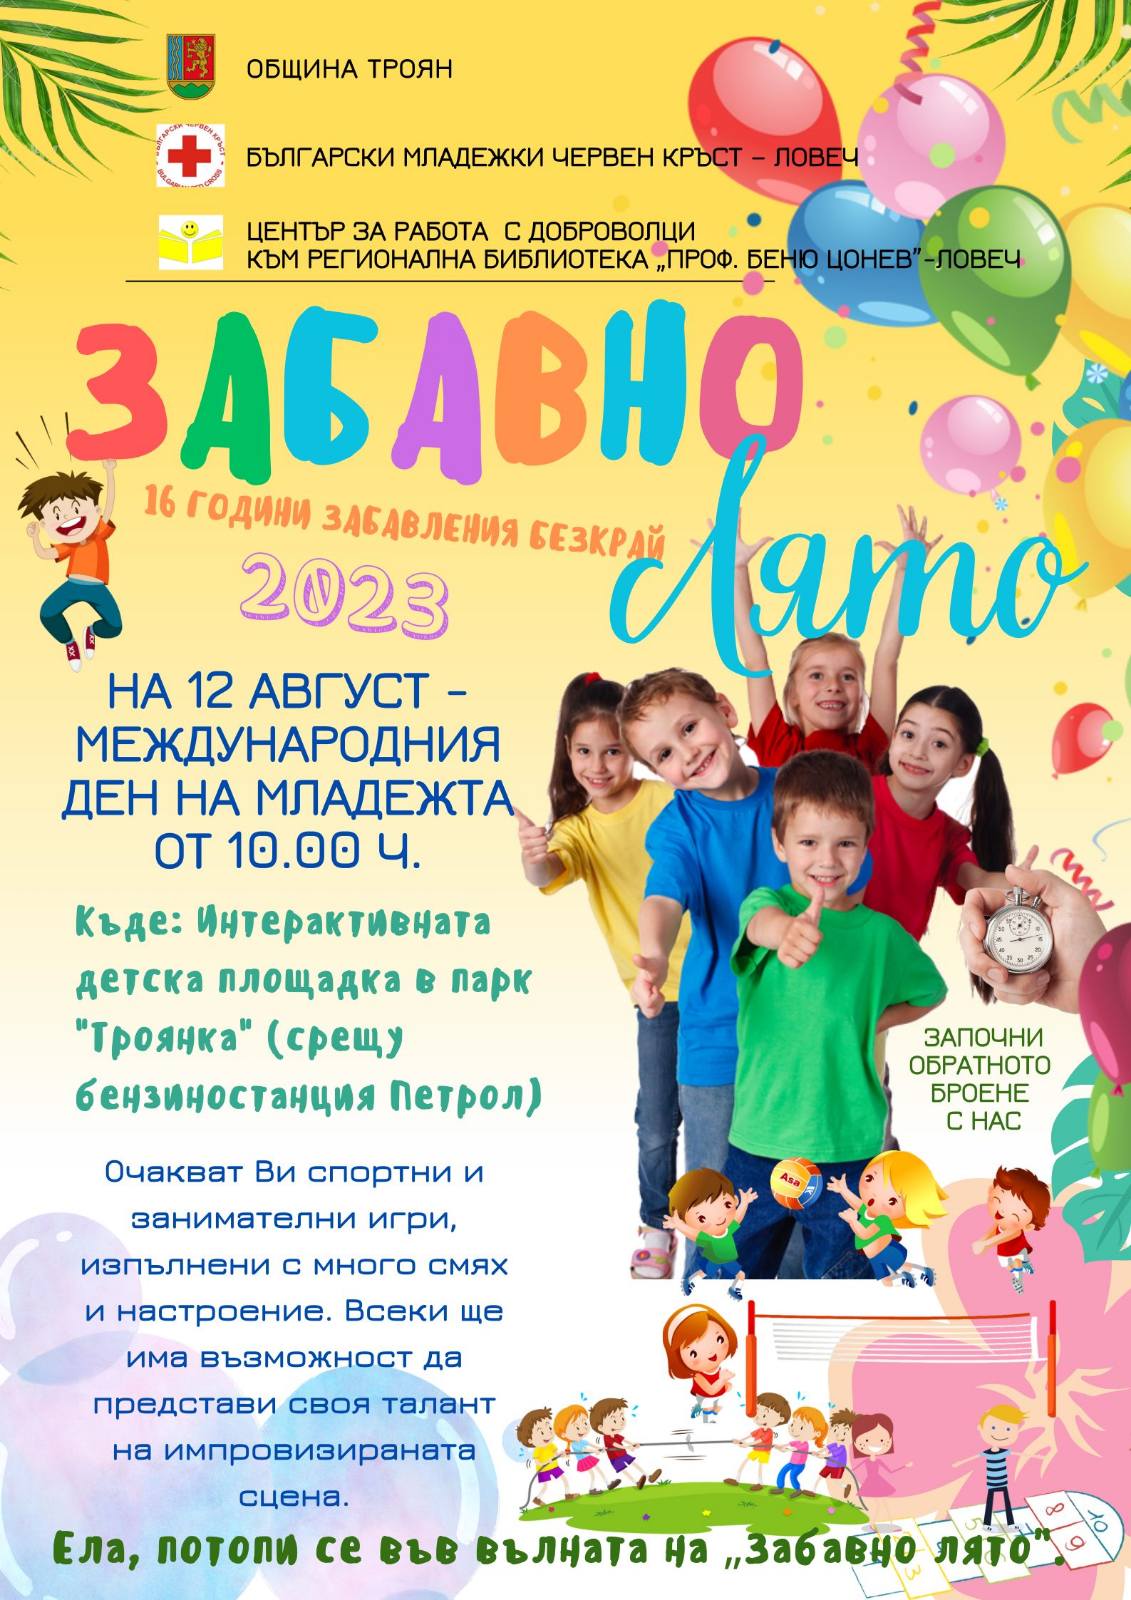 ТРОЯН. Забавни събития за Международния ден на младежта